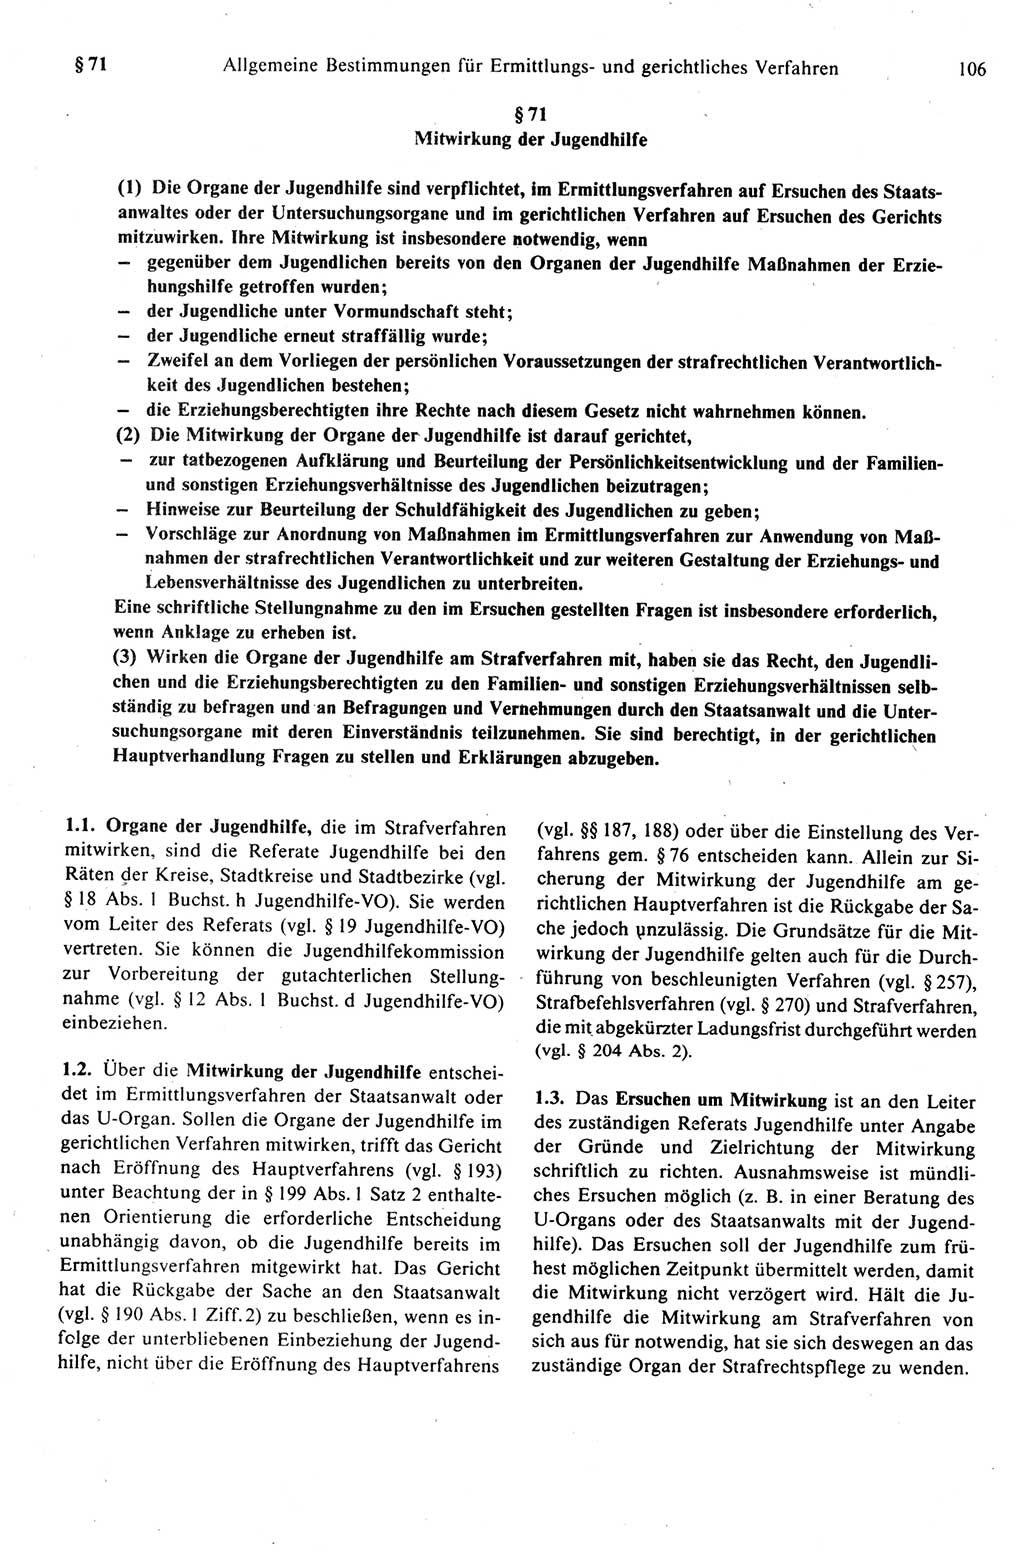 Strafprozeßrecht der DDR (Deutsche Demokratische Republik), Kommentar zur Strafprozeßordnung (StPO) 1989, Seite 106 (Strafprozeßr. DDR Komm. StPO 1989, S. 106)